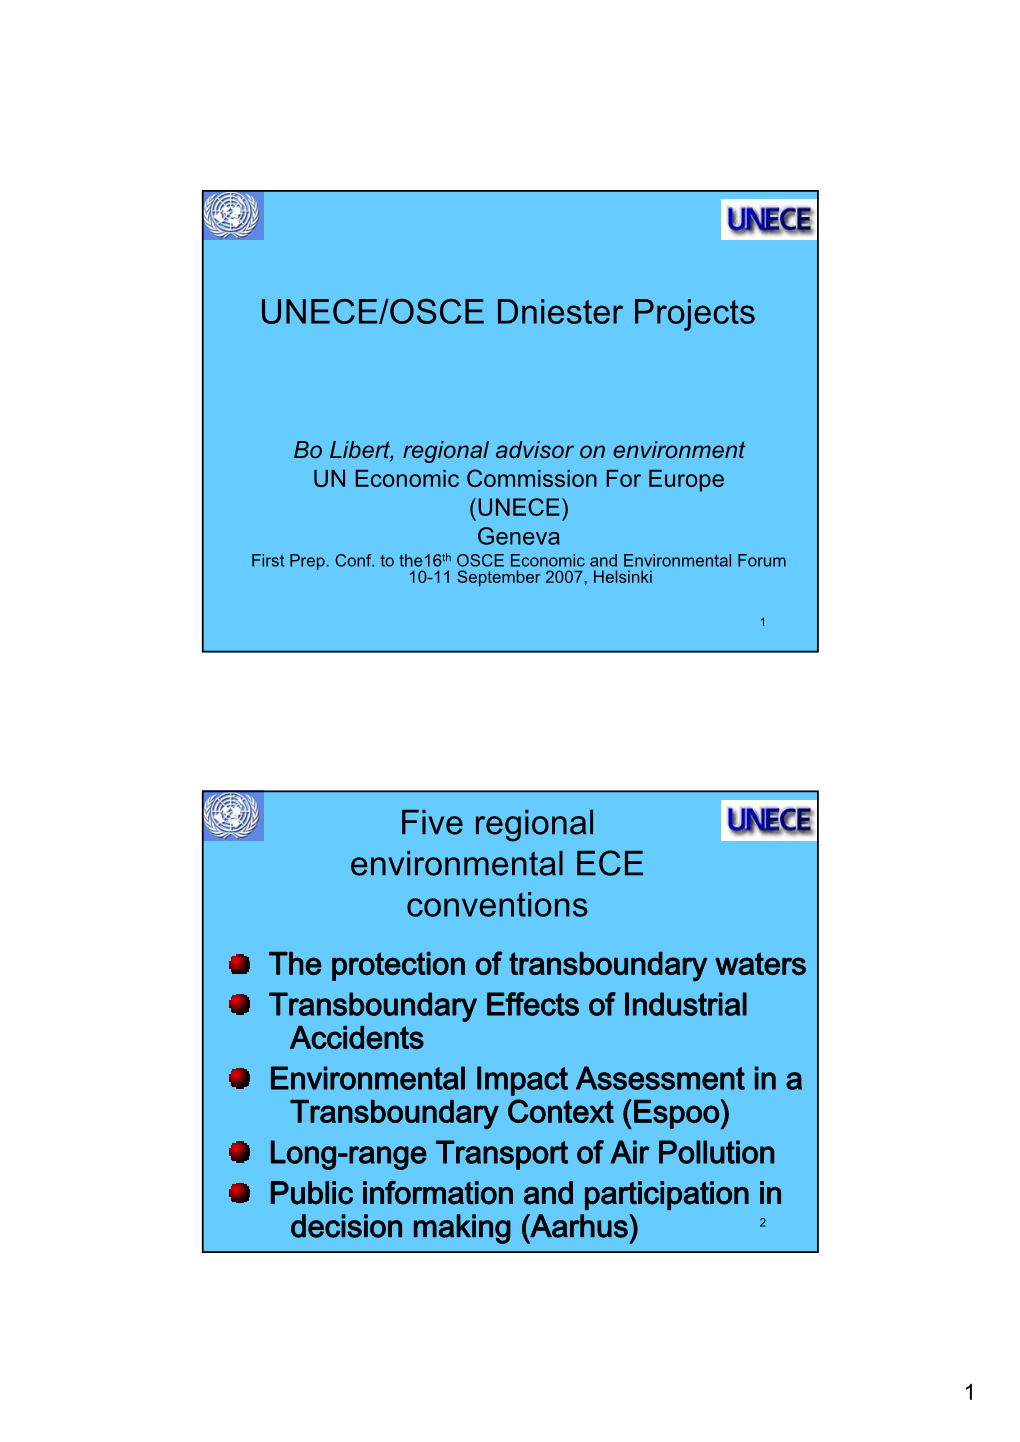 UNECE/OSCE Dniester Projects Five Regional Environmental ECE